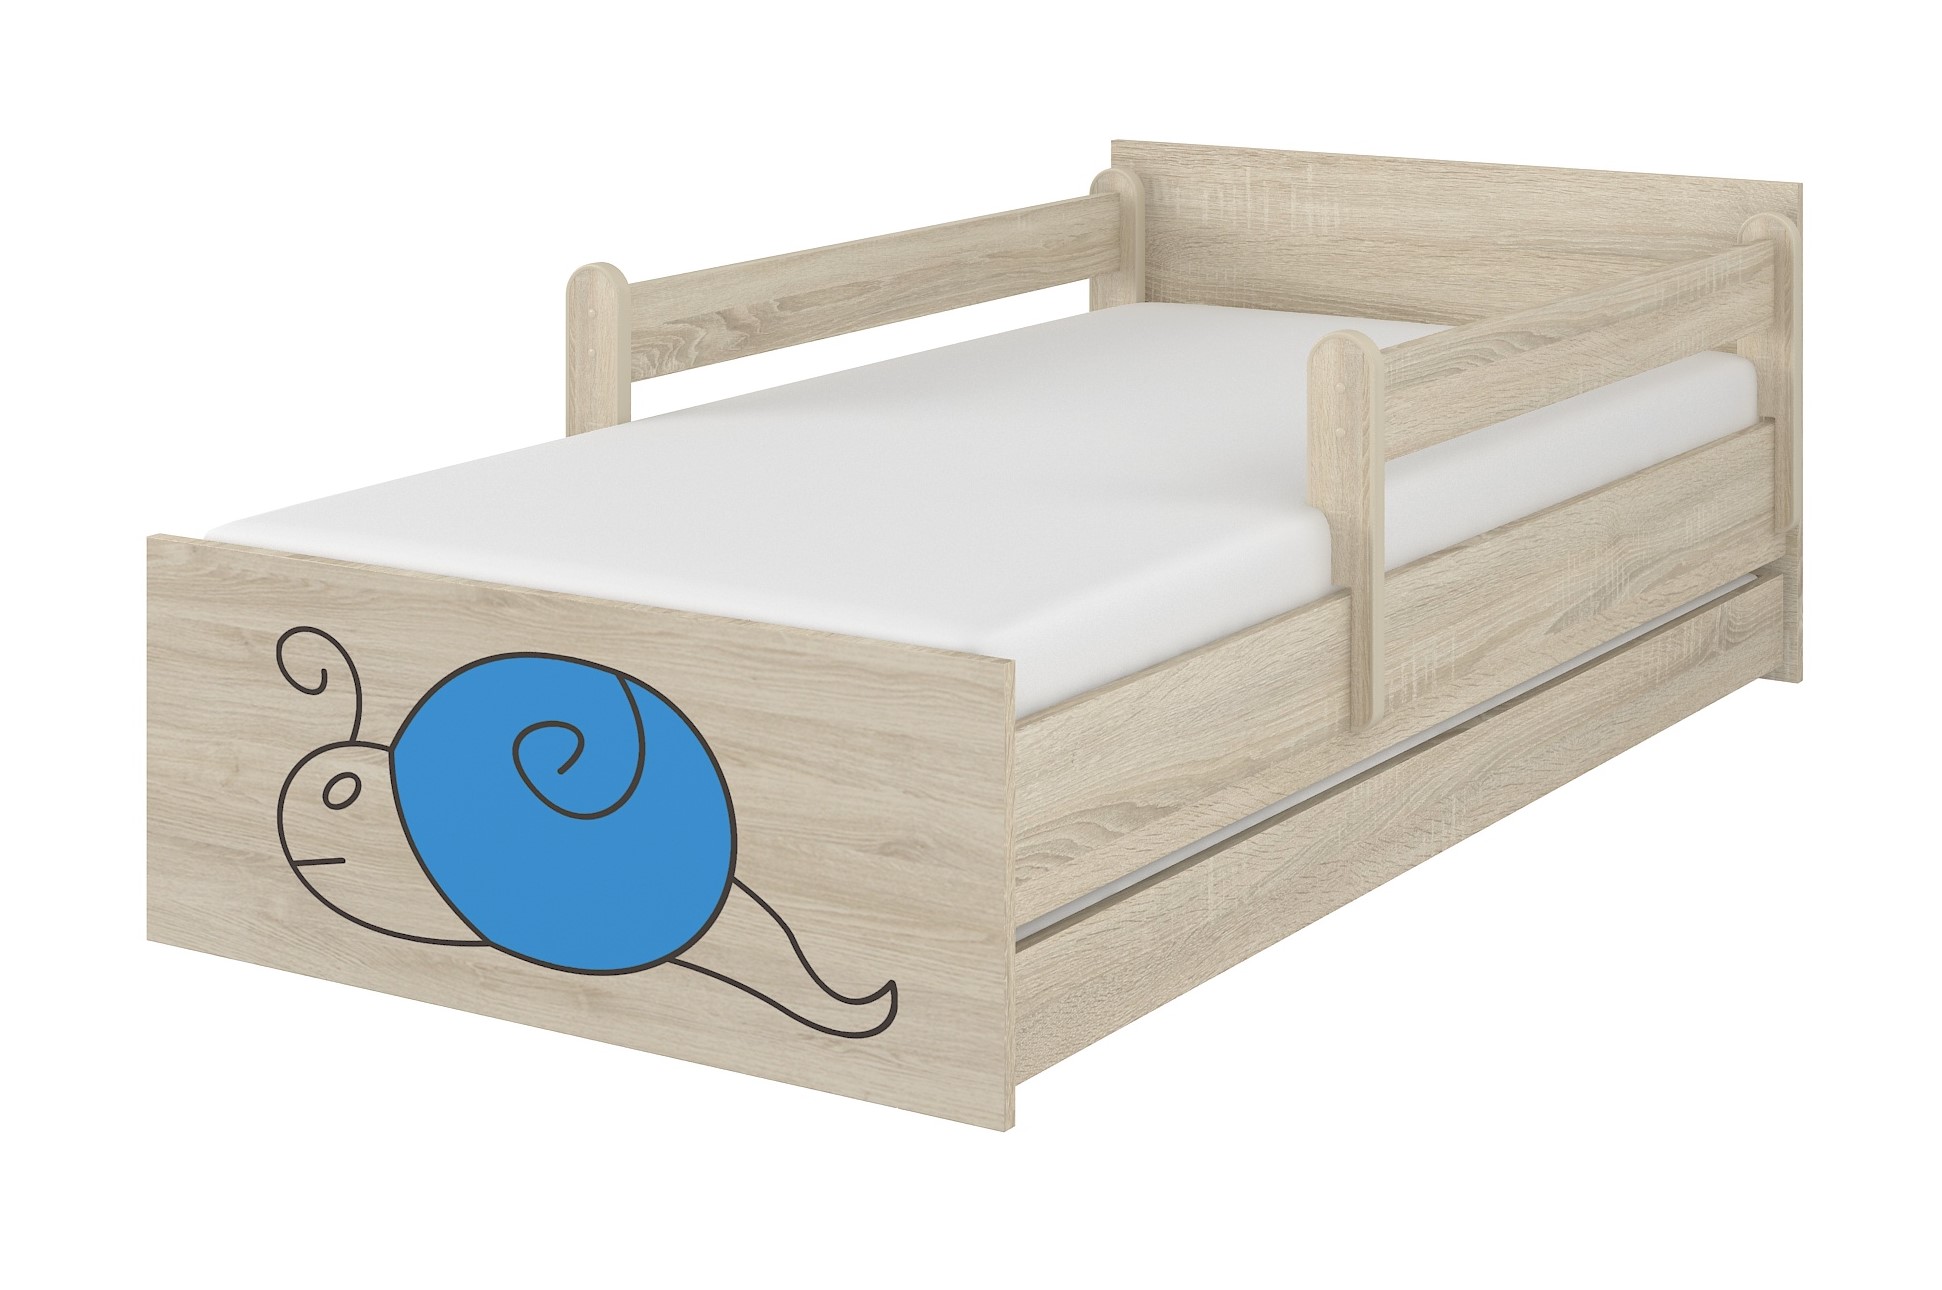 Detská postel sonoma gravírovaný modrý slimák + zábrany160x80